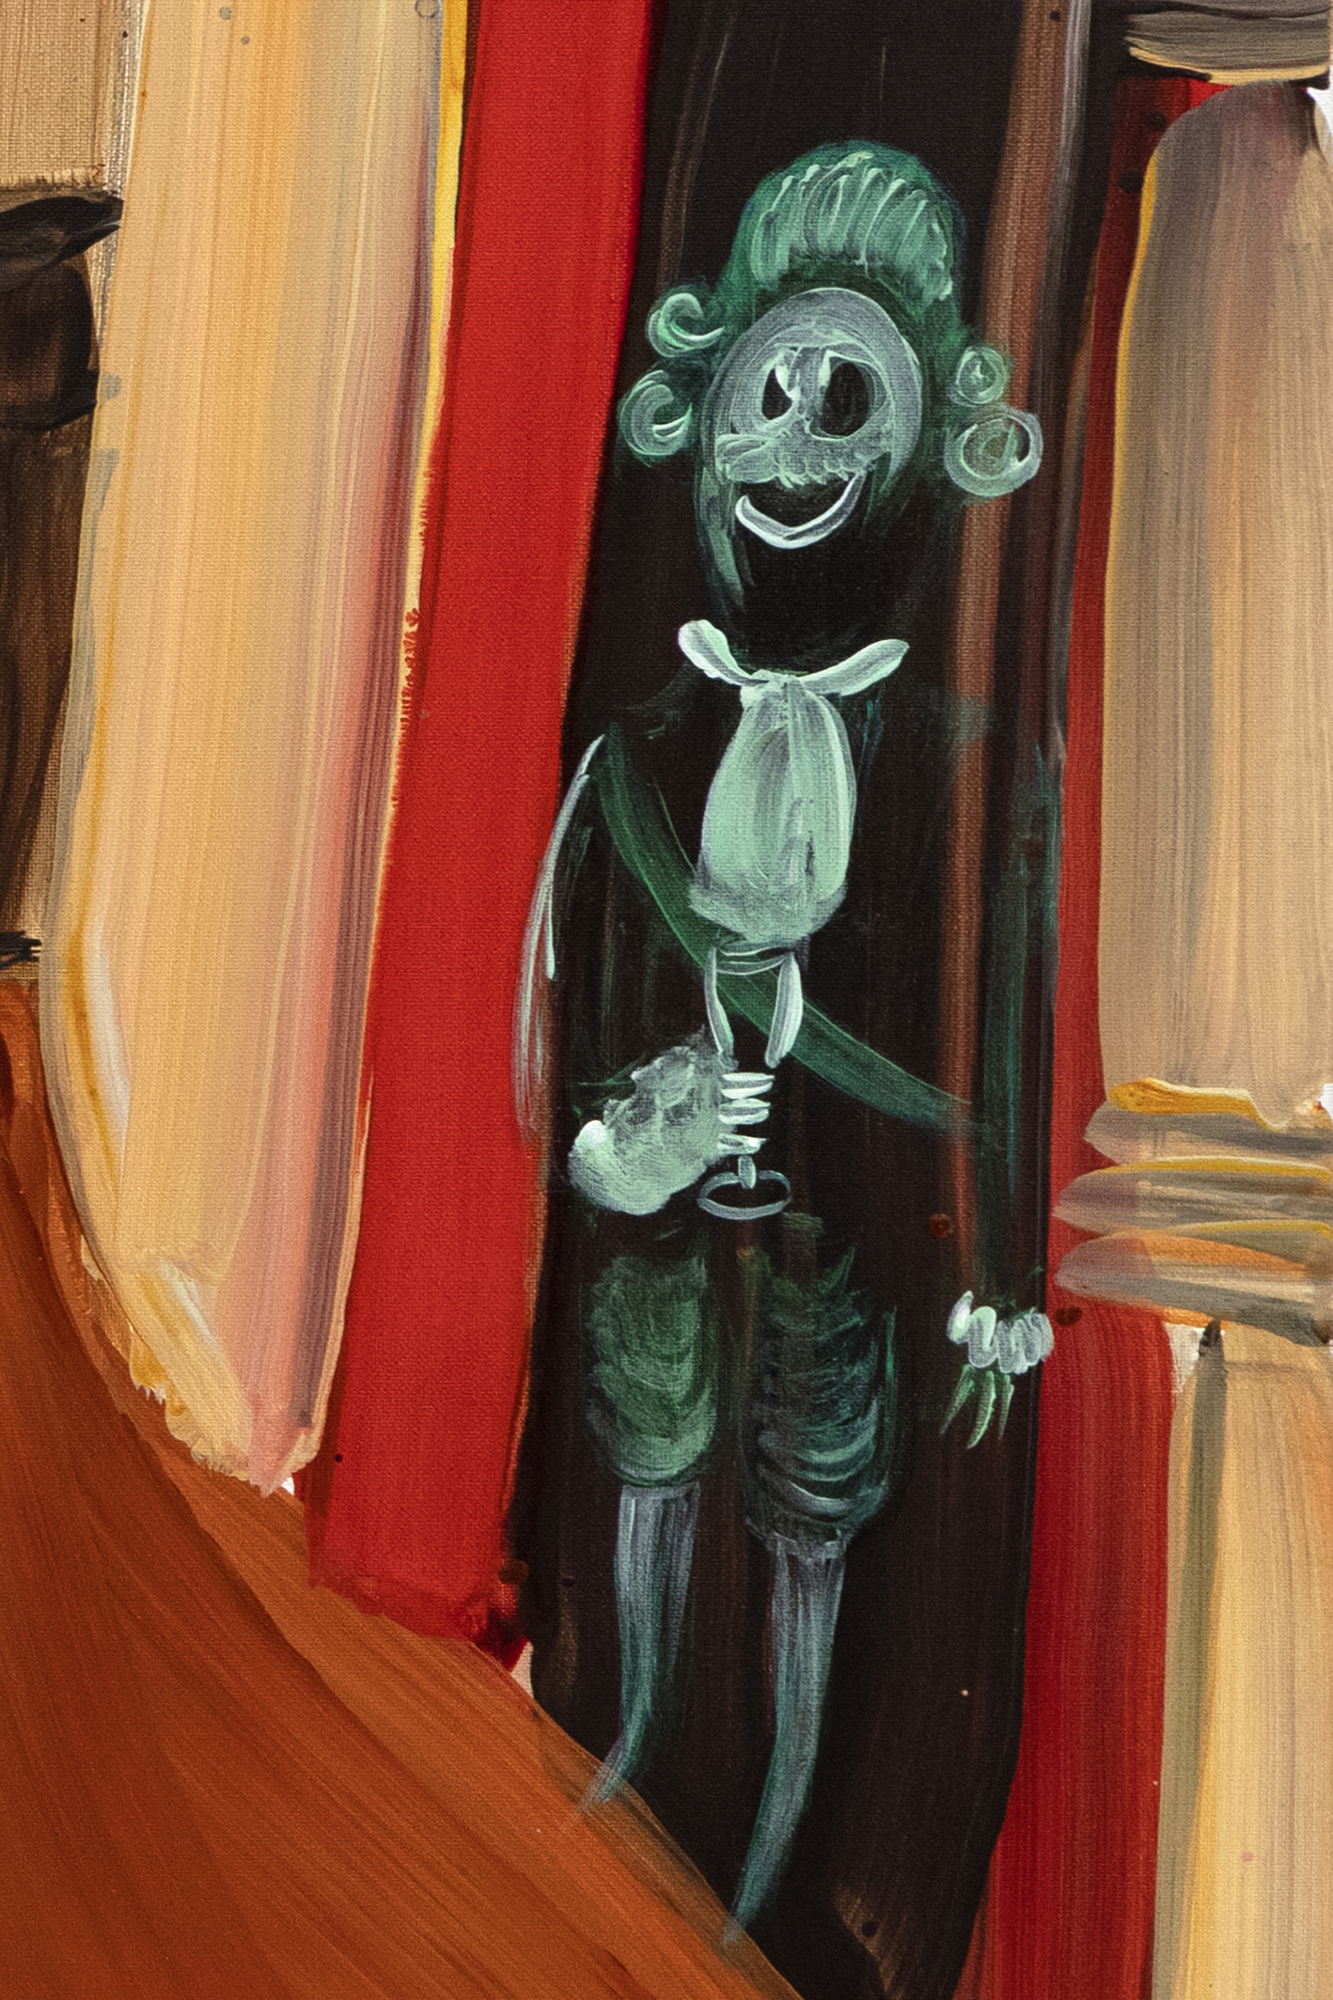 Genieve Figgis ist eine bemerkenswerte Figur in der zeitgenössischen irischen Kunstszene. Sie ist bekannt für ihre klugen und kritischen Gruppenporträts, die sich oft über längst vergangene gesellschaftliche Konventionen lustig machen. Als relative Späteinsteigerin in die Malerei erregte sie über Twitter die Aufmerksamkeit des amerikanischen Appropriation-Künstlers Richard Prince, der daraufhin eines ihrer Werke erwarb und sie in die einflussreichen Kreise der New Yorker Kunstszene einführte. Figgis&#039; Werk kritisiert spielerisch die Konsumgewohnheiten der wohlhabenden Mittelschicht und den luxuriösen Lebensstil, wie er von Künstlern der Vergangenheit verewigt wurde, und holt diese Themen mit einer Mischung aus Satire und rohen, authentischen Darstellungen des Lebens in die Gegenwart. Figgis schlägt eine Brücke zu Daumier oder Hogarth, deren Werke häufig einen satirischen Blick auf die zeitgenössische Gesellschaft werfen, und schließt sich Künstlern an, die sich der Gesellschaftssatire verschrieben haben und für ihre scharfe Beobachtungsgabe bekannt sind.